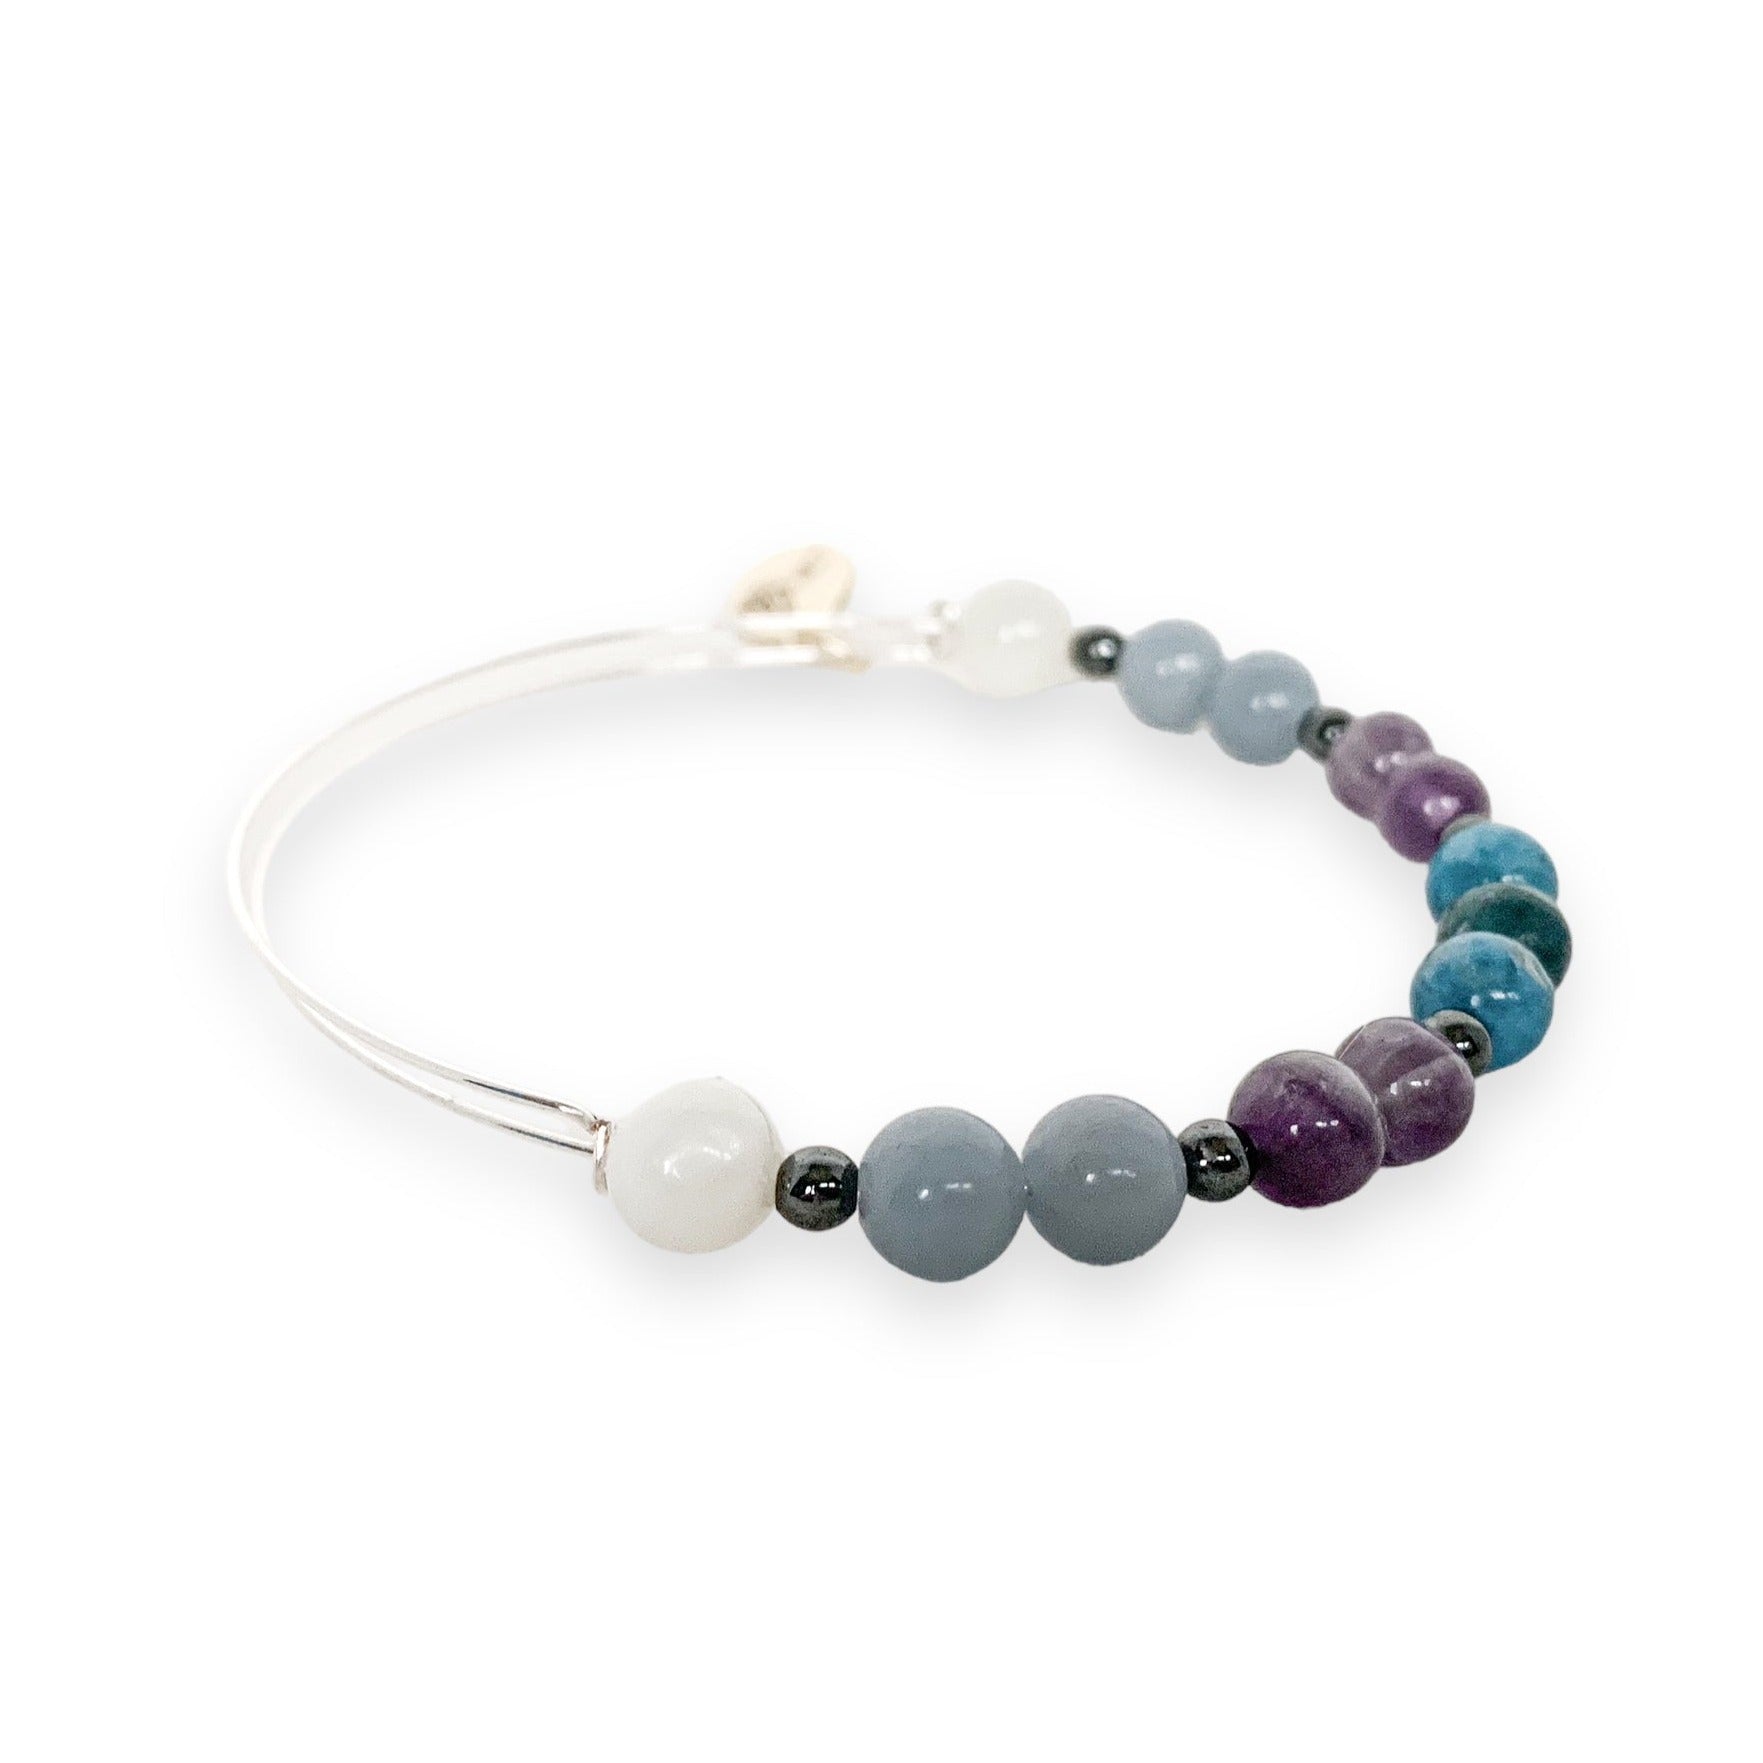 Elegant Aquarius Bracelet designed for empowerment.